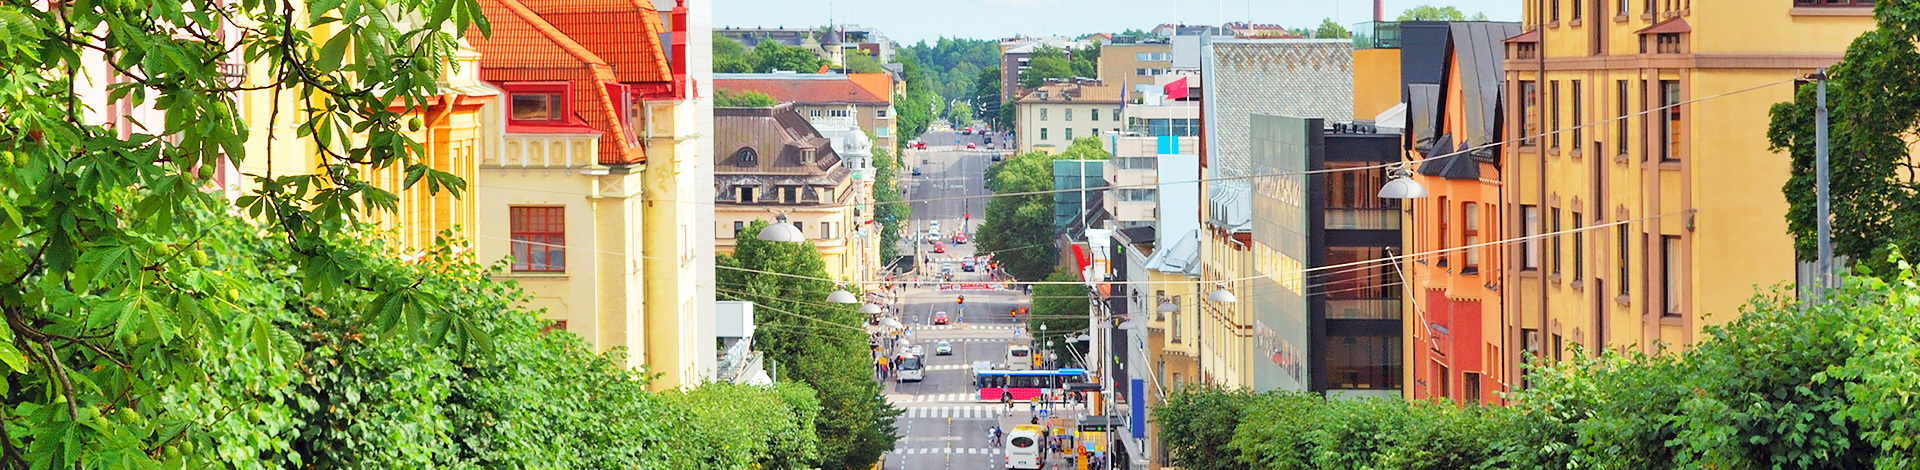 View of Turku